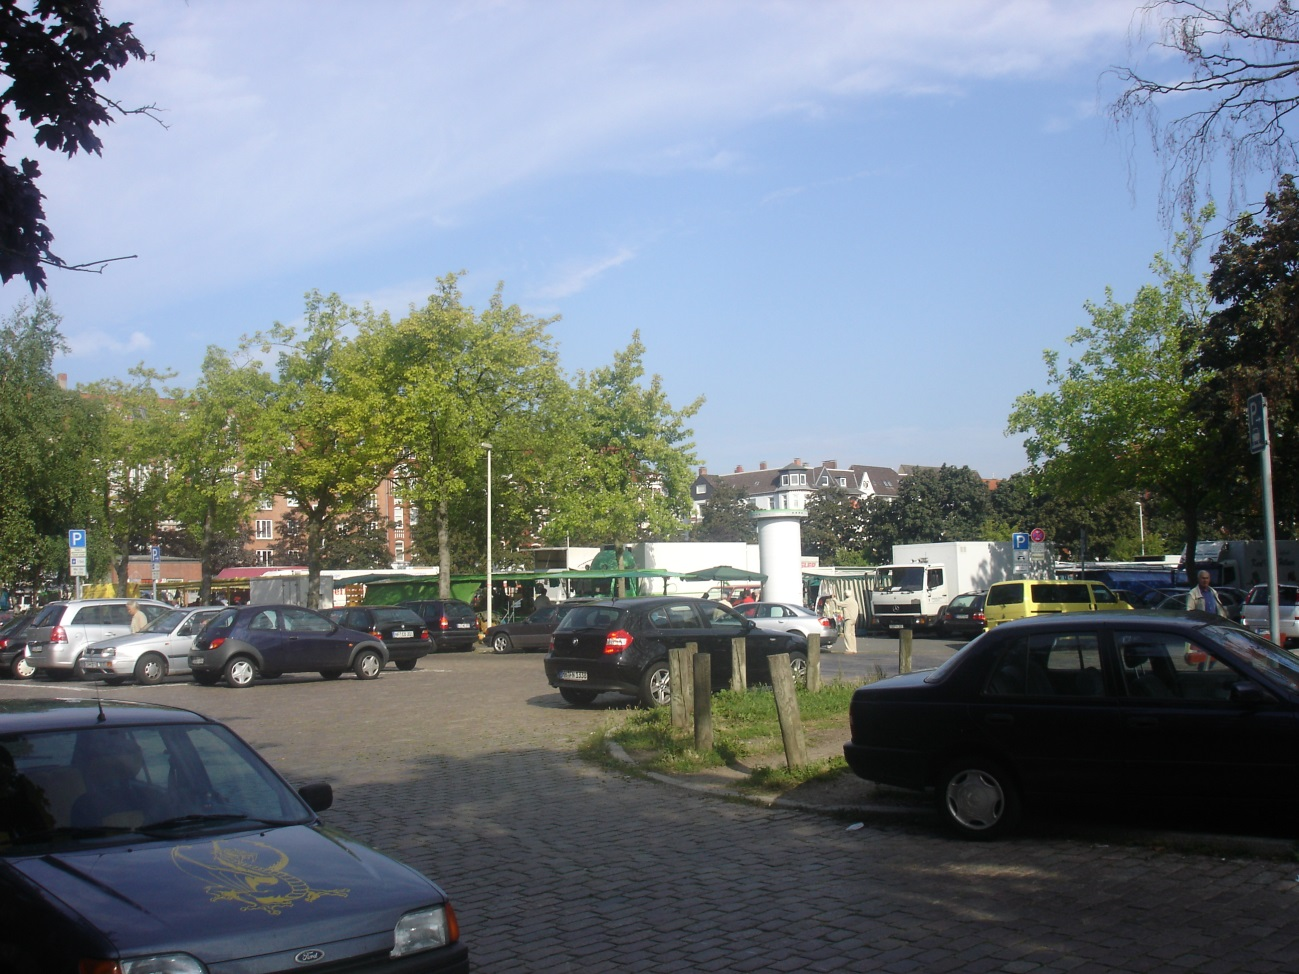 Lage Die Liegenschaft befindet sich in der Nettelbeckstraße des beliebten Stadtteils Kiel- Blücherplatz in direkter Nachbarschaft zum Blücherplatz.